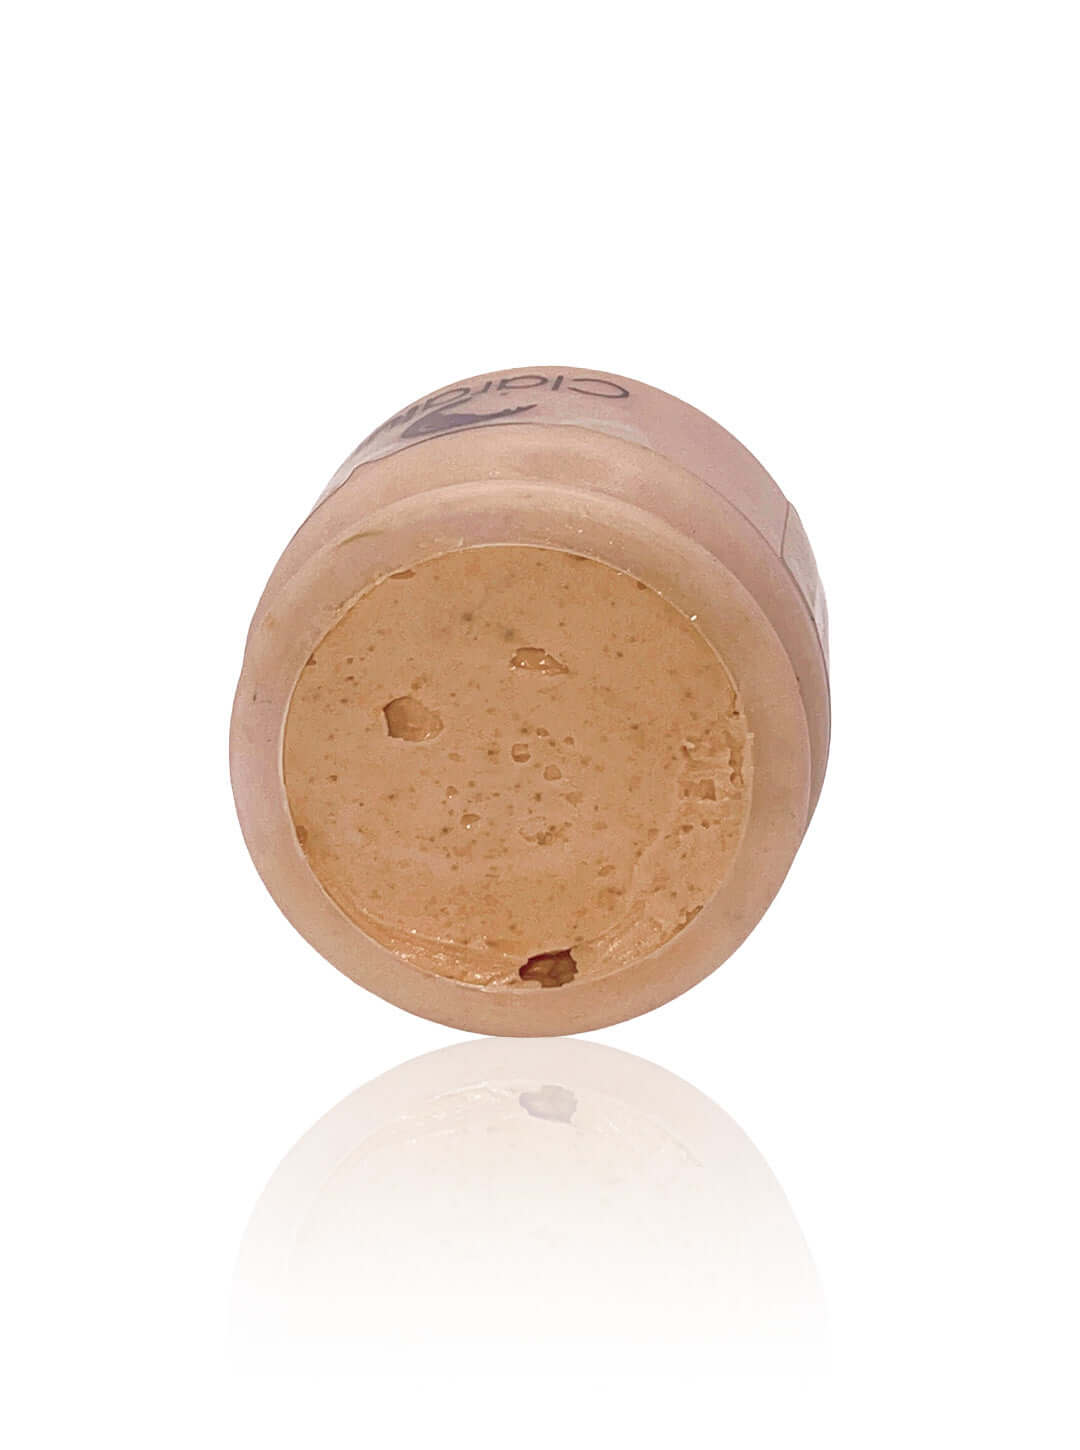 CLARALUNA Crema facial antimanchas y revitalizante 100% natural.